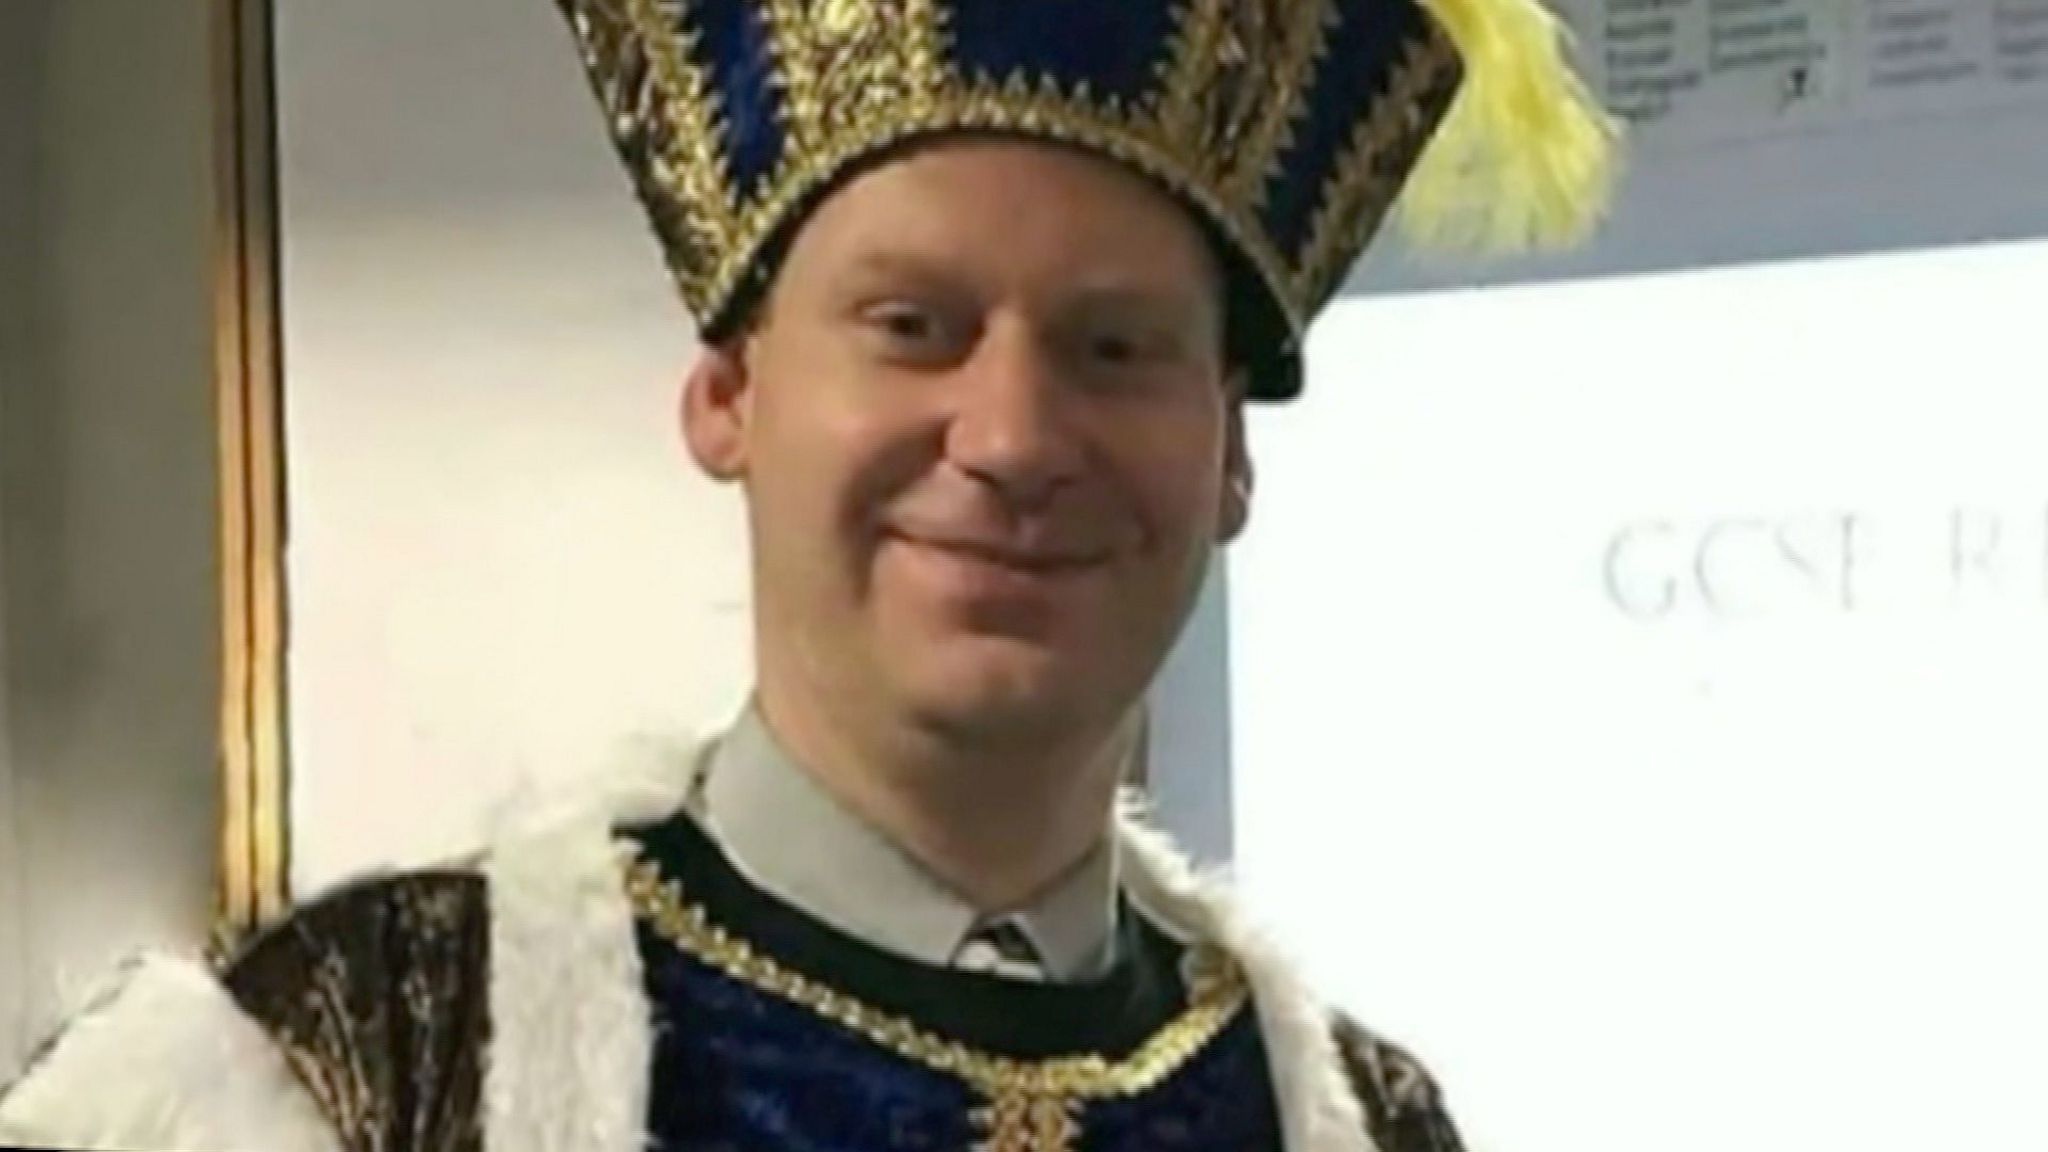 James Furlong dressed as Henry VIII